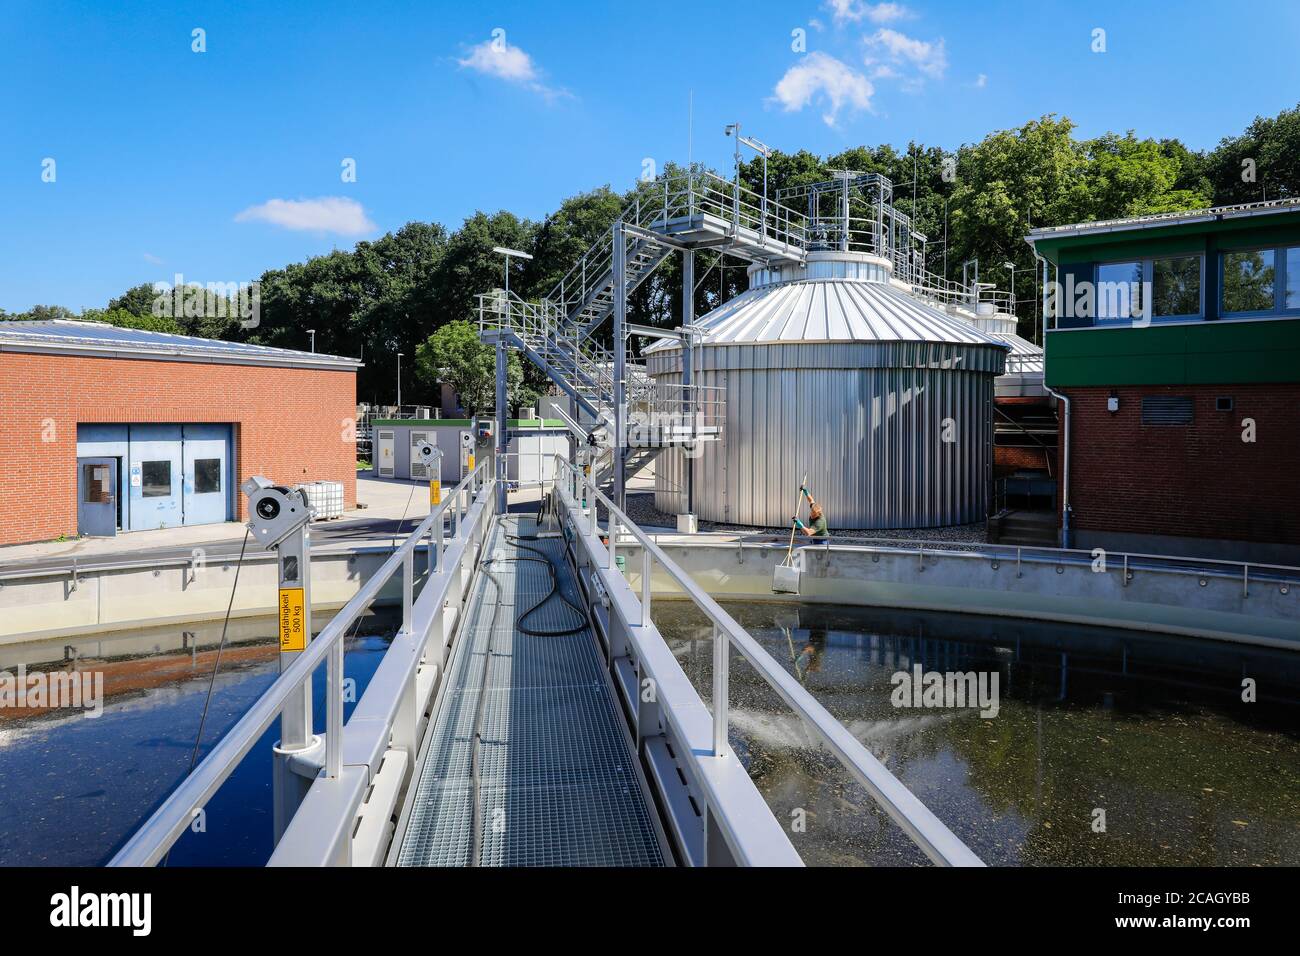 12.06.2020, Voerde, North Rhine-Westphalia, Germany - Voerde wastewater treatment plant, wastewater treatment in the modernised wastewater treatment p Stock Photo